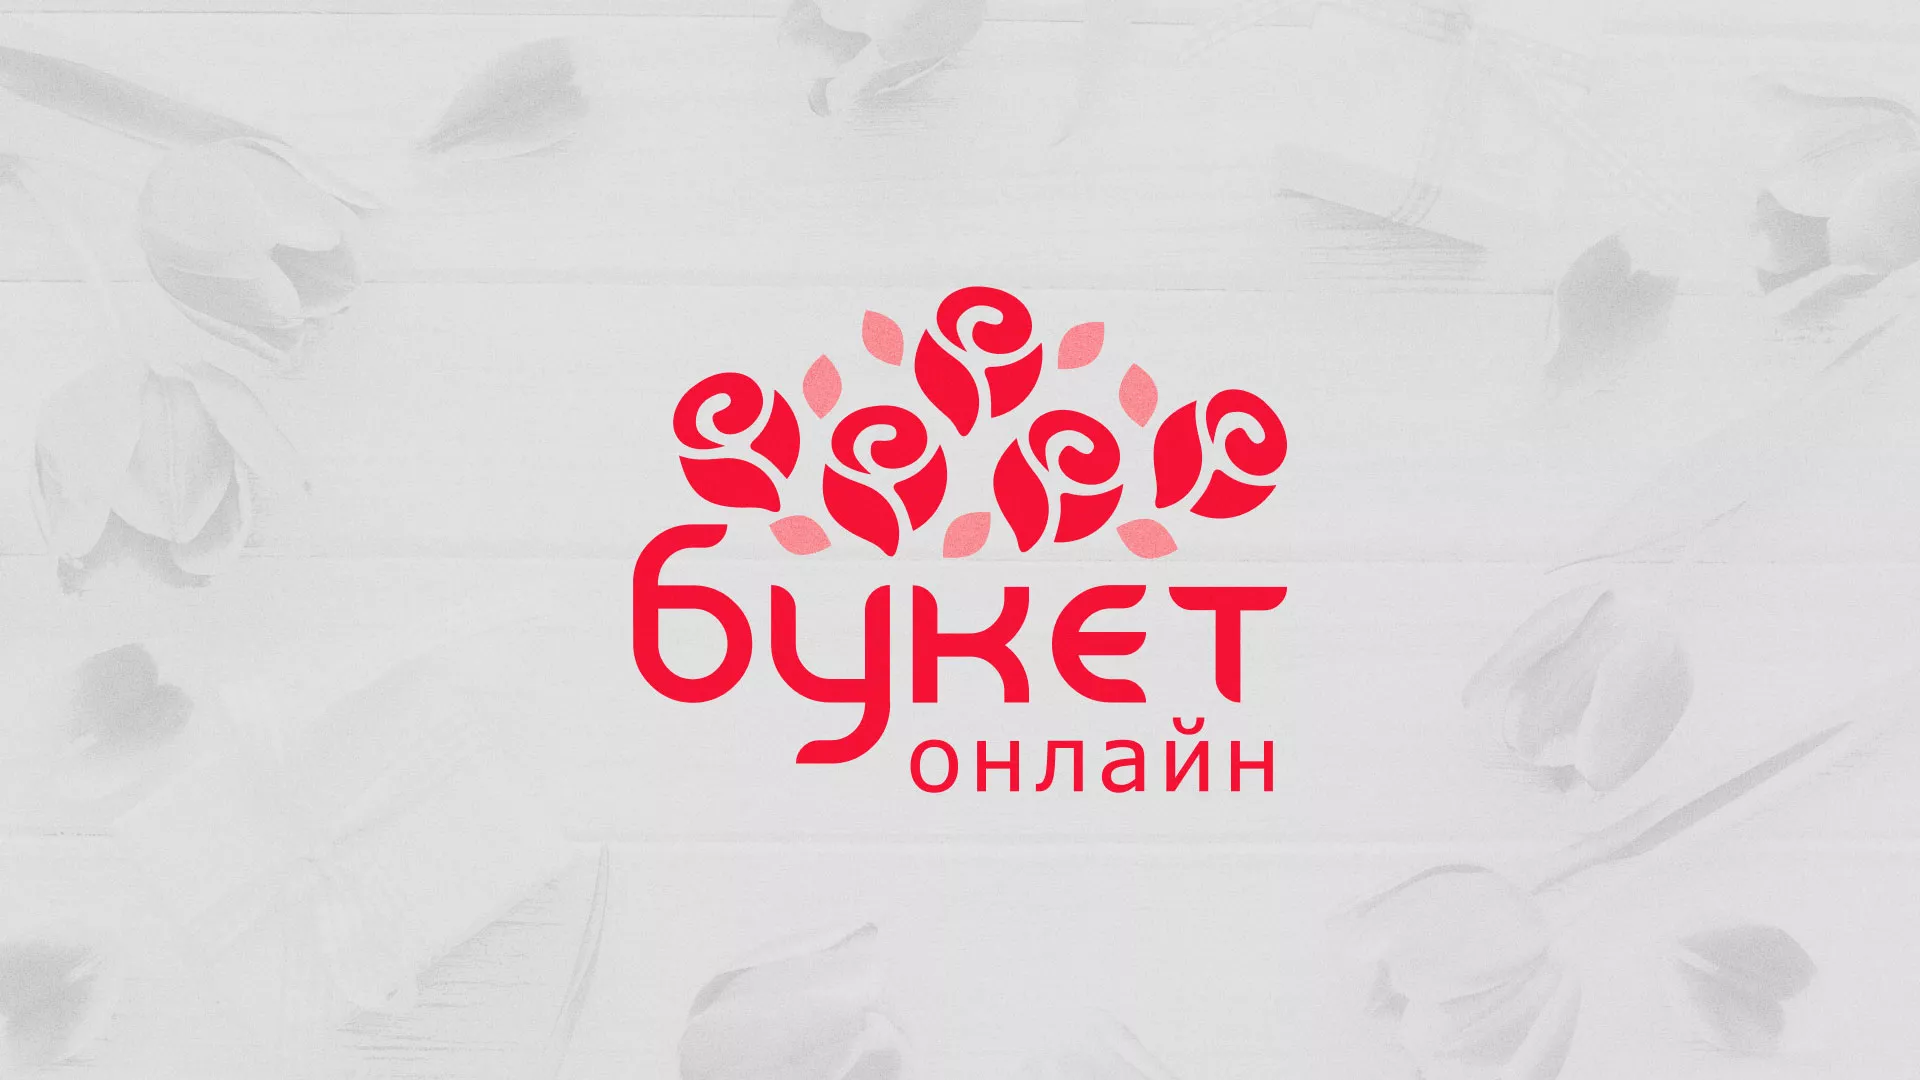 Создание интернет-магазина «Букет-онлайн» по цветам в Чебоксарах